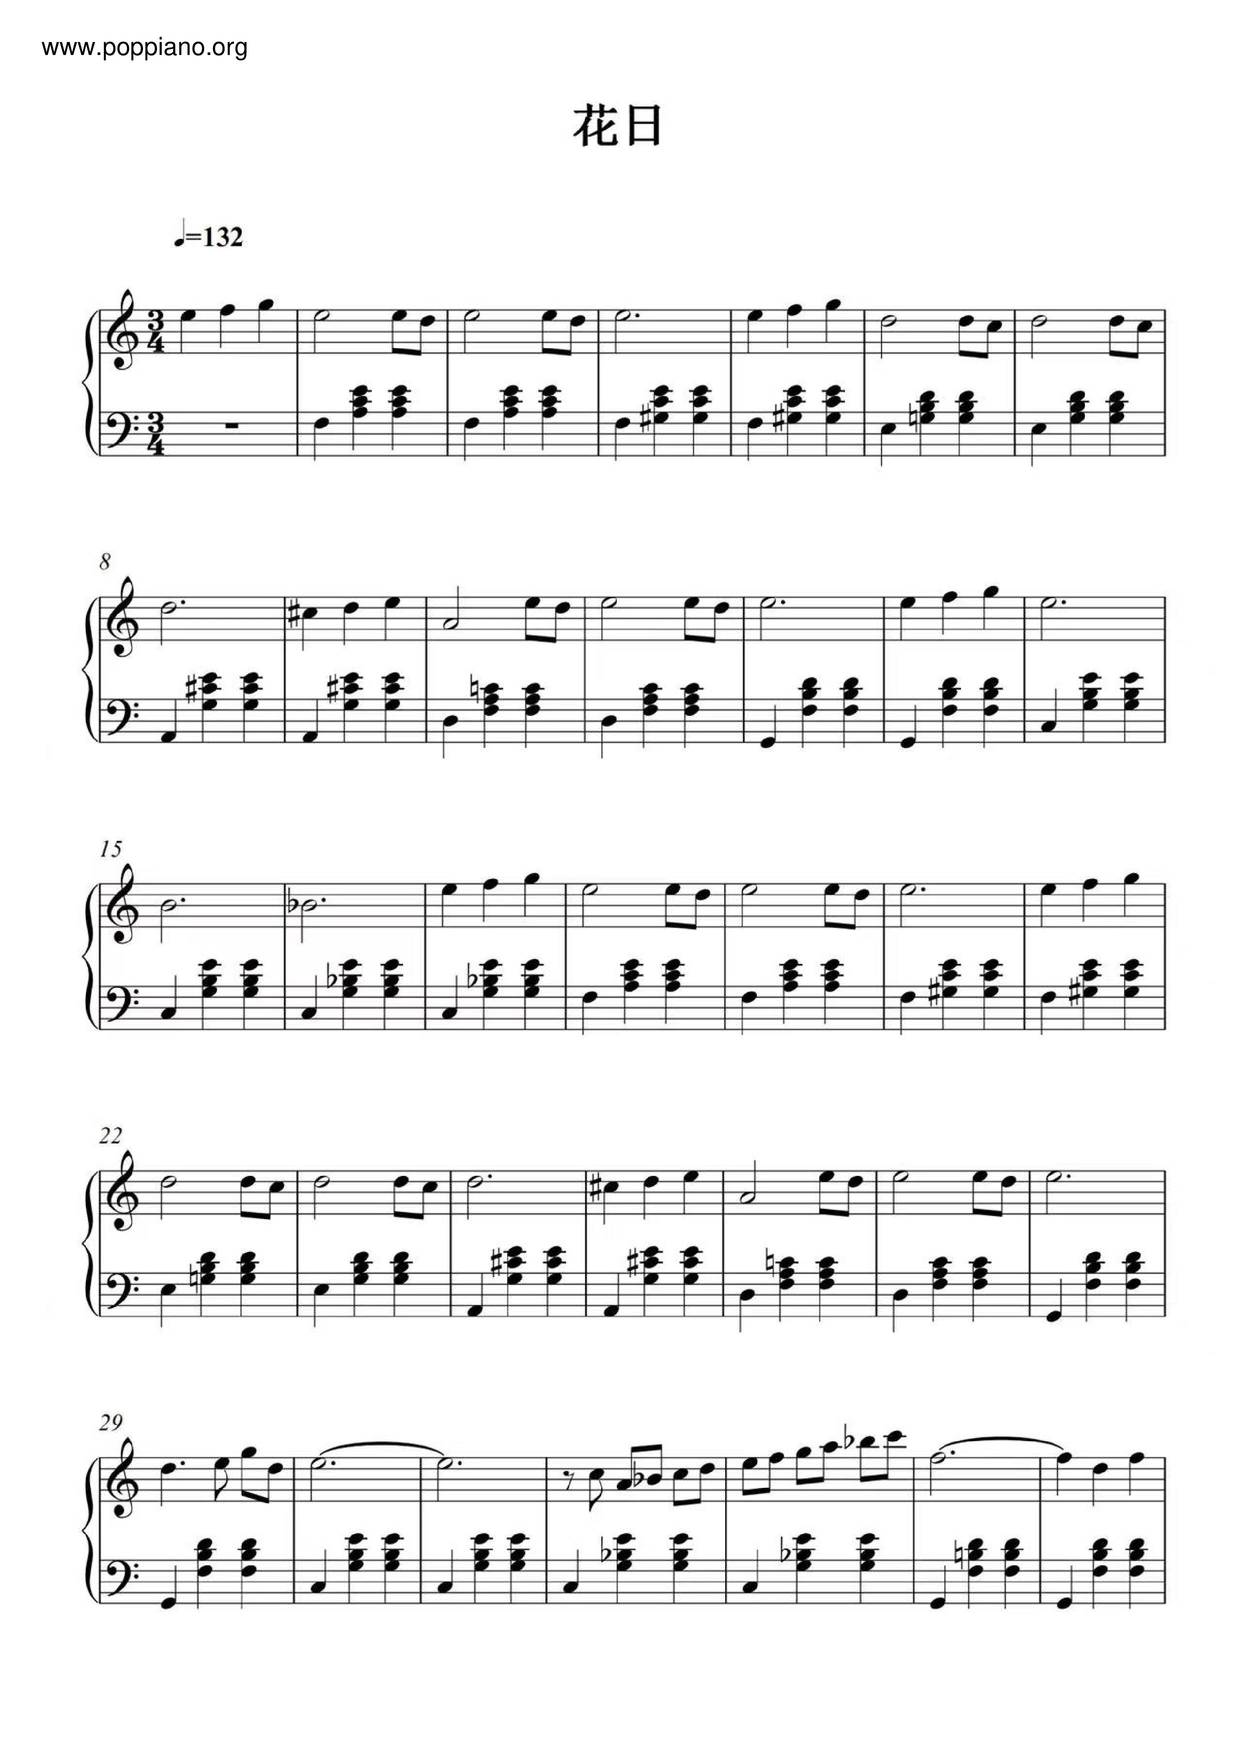 黄真伊 花日琴谱 五线谱pdf 香港流行钢琴协会琴谱下载